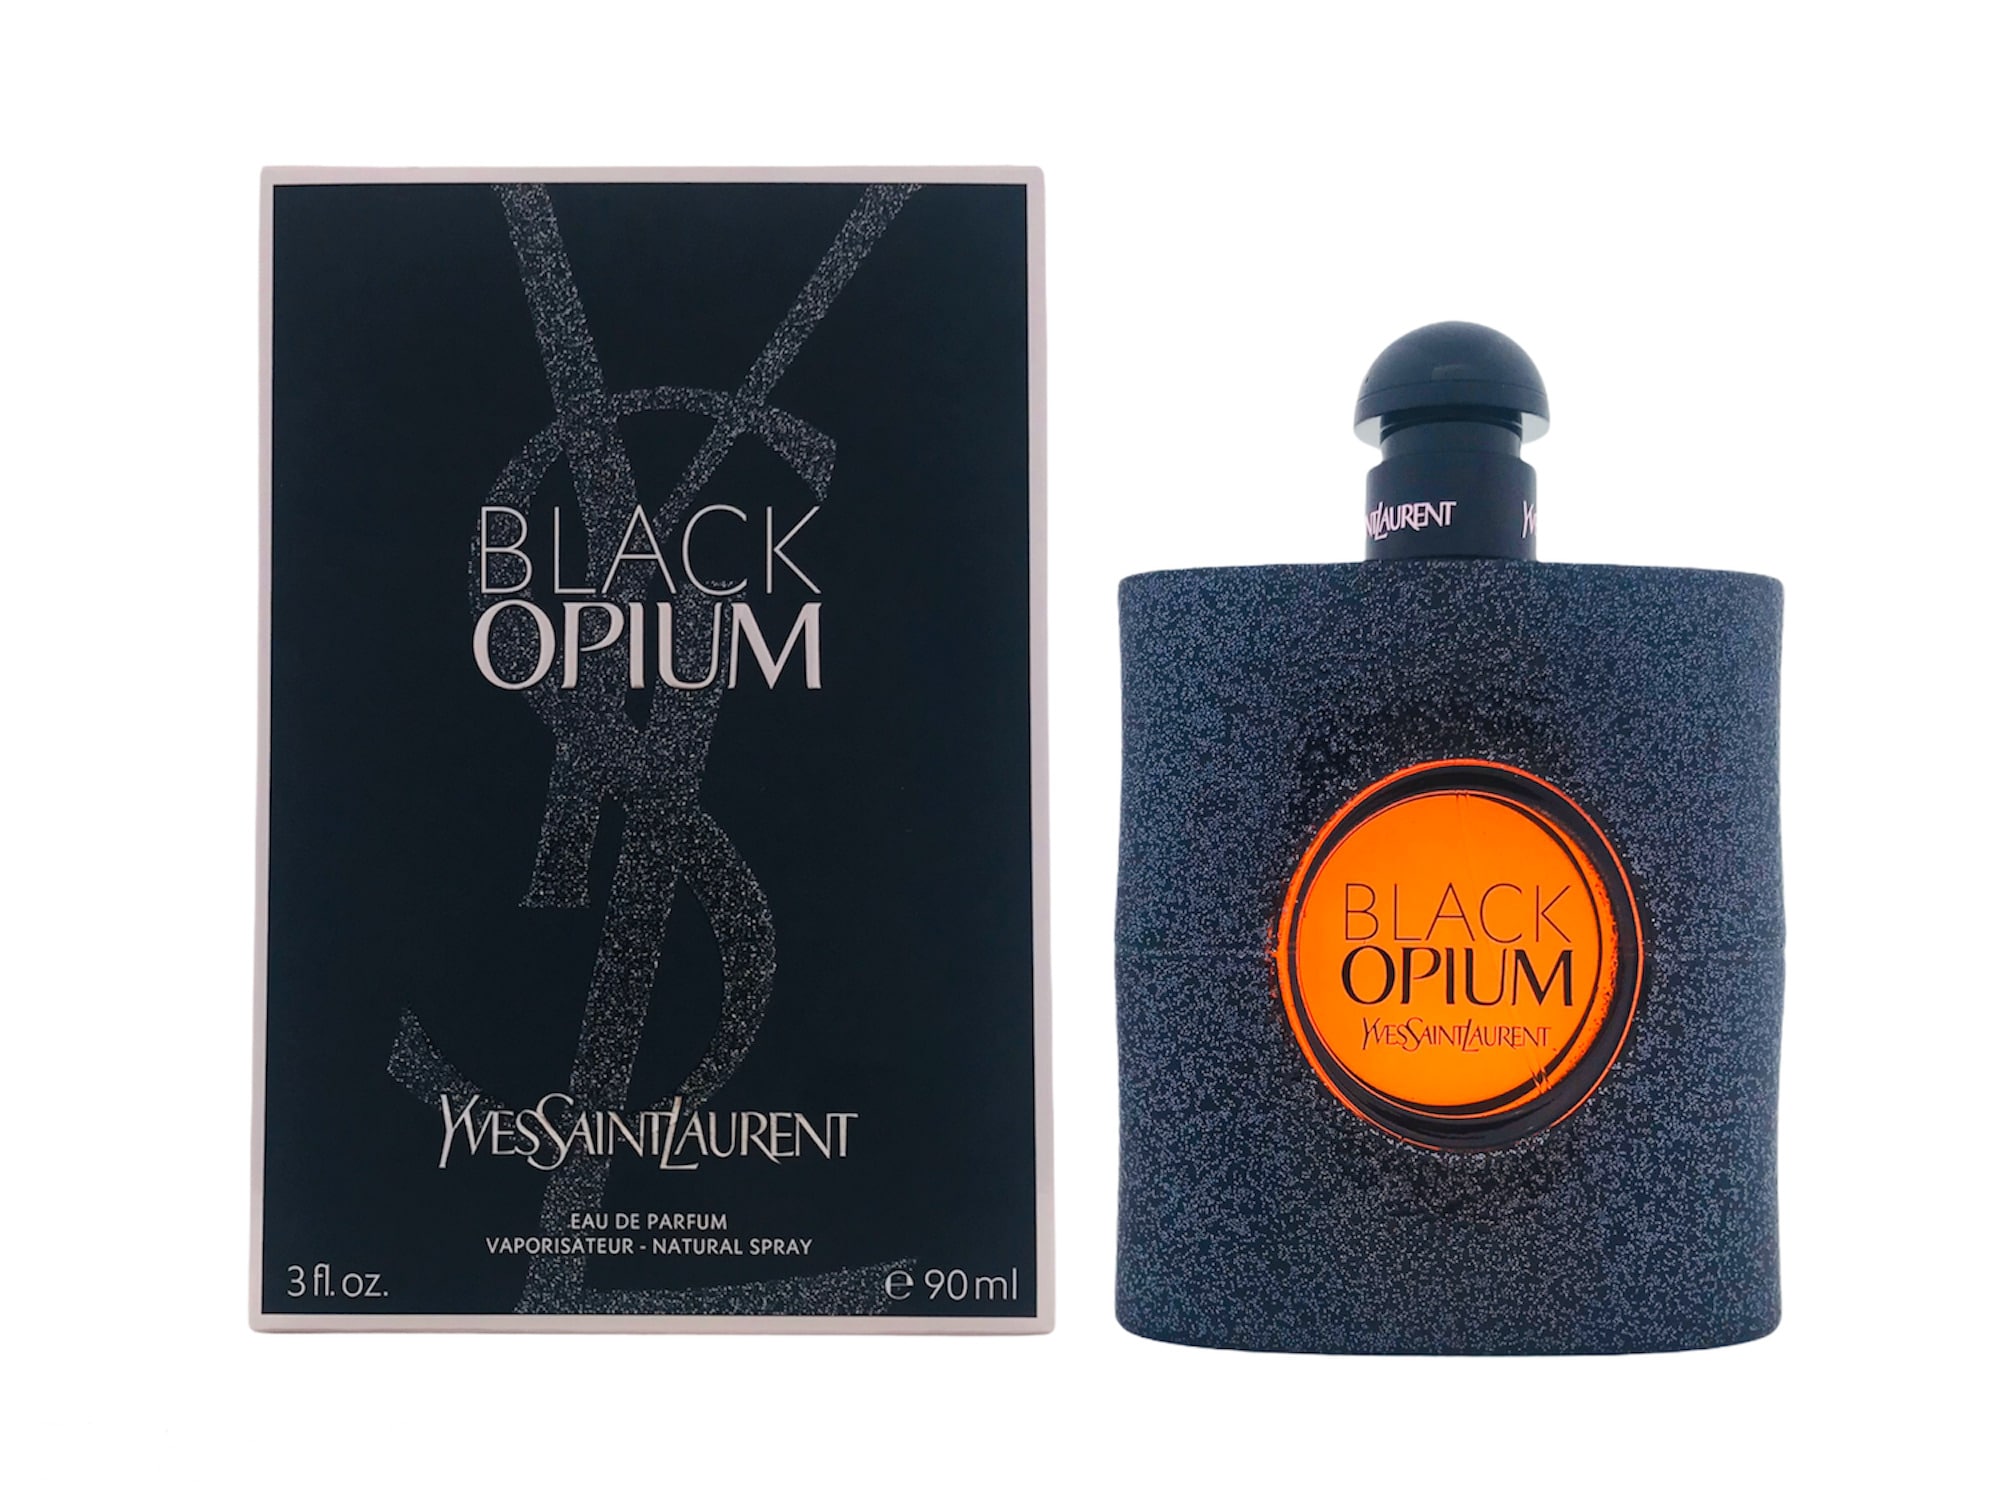  Yves Saint Laurent Black Opium Eau de Parfum 50ml